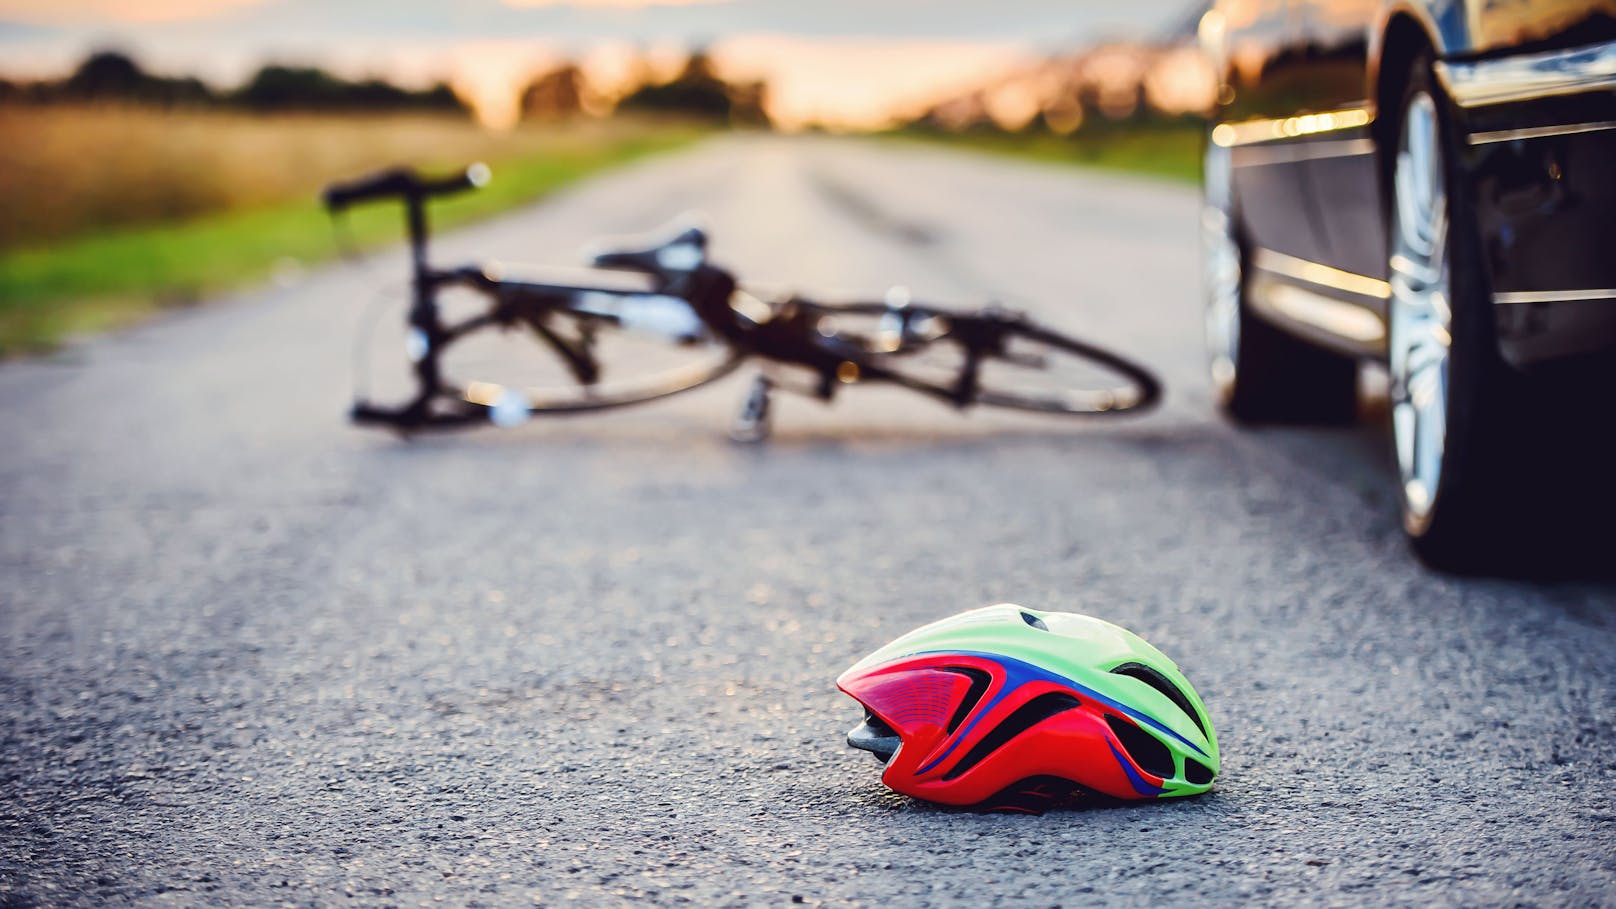 Auto übersehen! Radfahrer stirbt bei Kollision mit Pkw